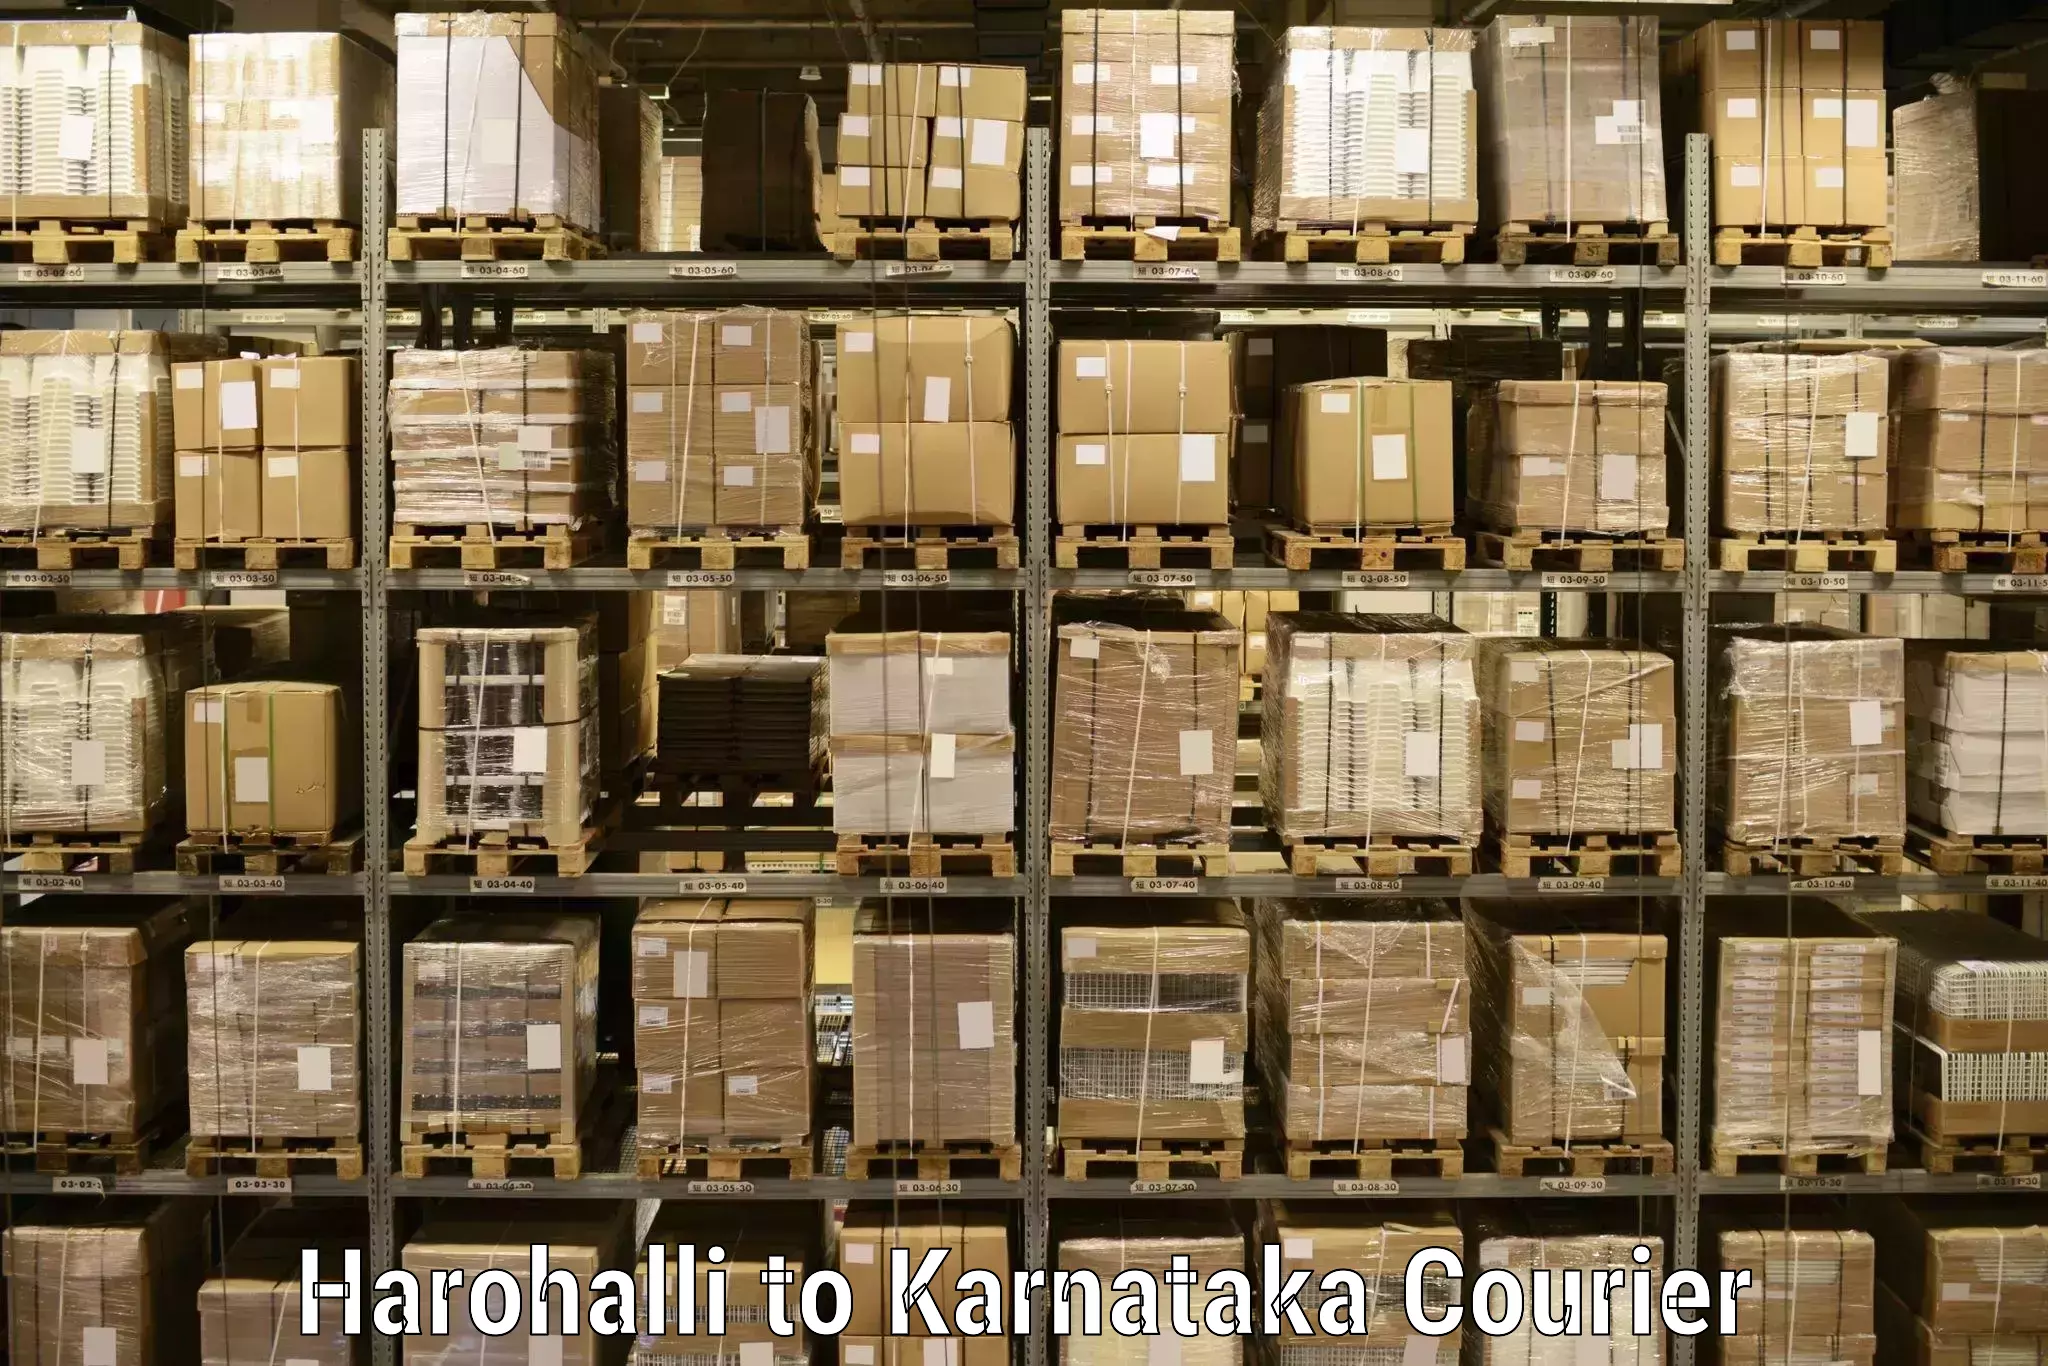 High-speed parcel service Harohalli to Devanahalli